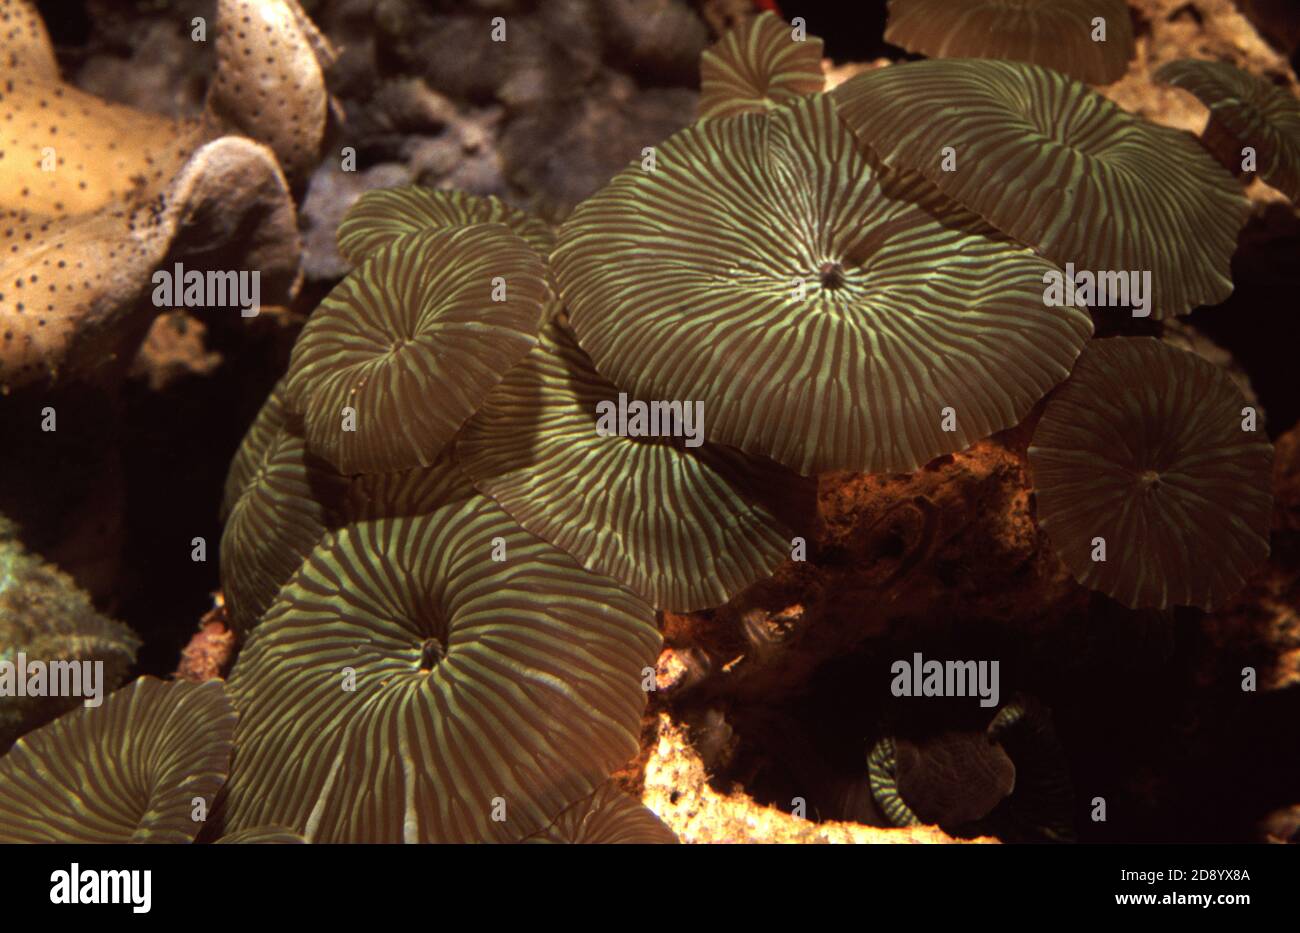 Discosoma est un genre de cnidariens de l'ordre de Corallimordaria. Les noms communs incluent l'anémone de champignon, l'anémone de disque et le champignon d'oreille d'éléphant Banque D'Images